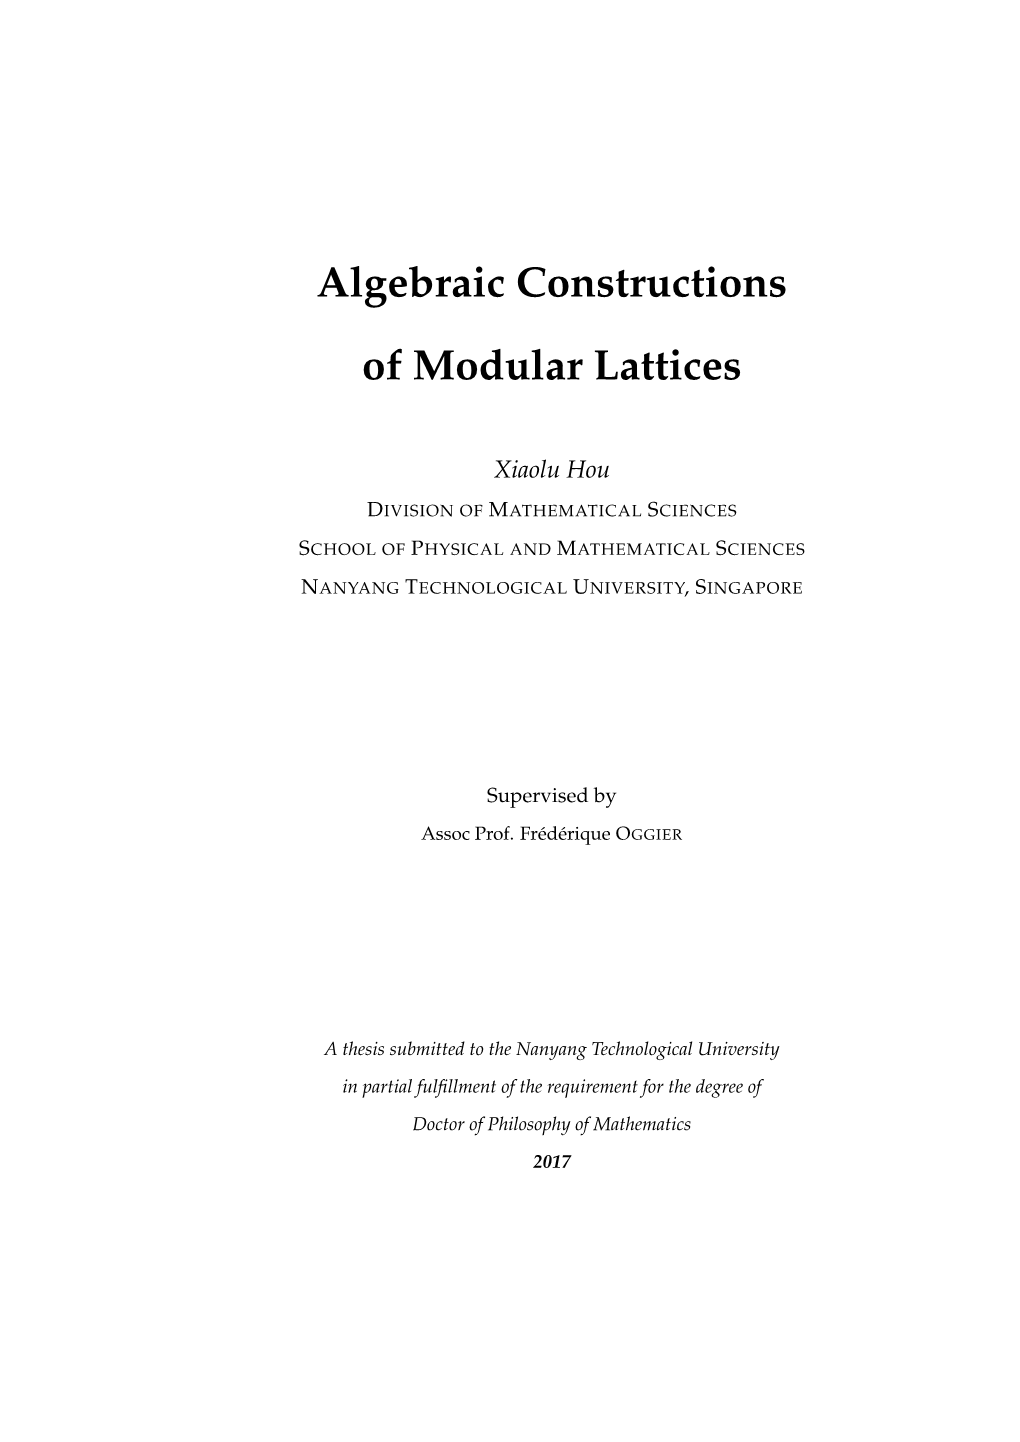 Algebraic Constructions of Modular Lattices